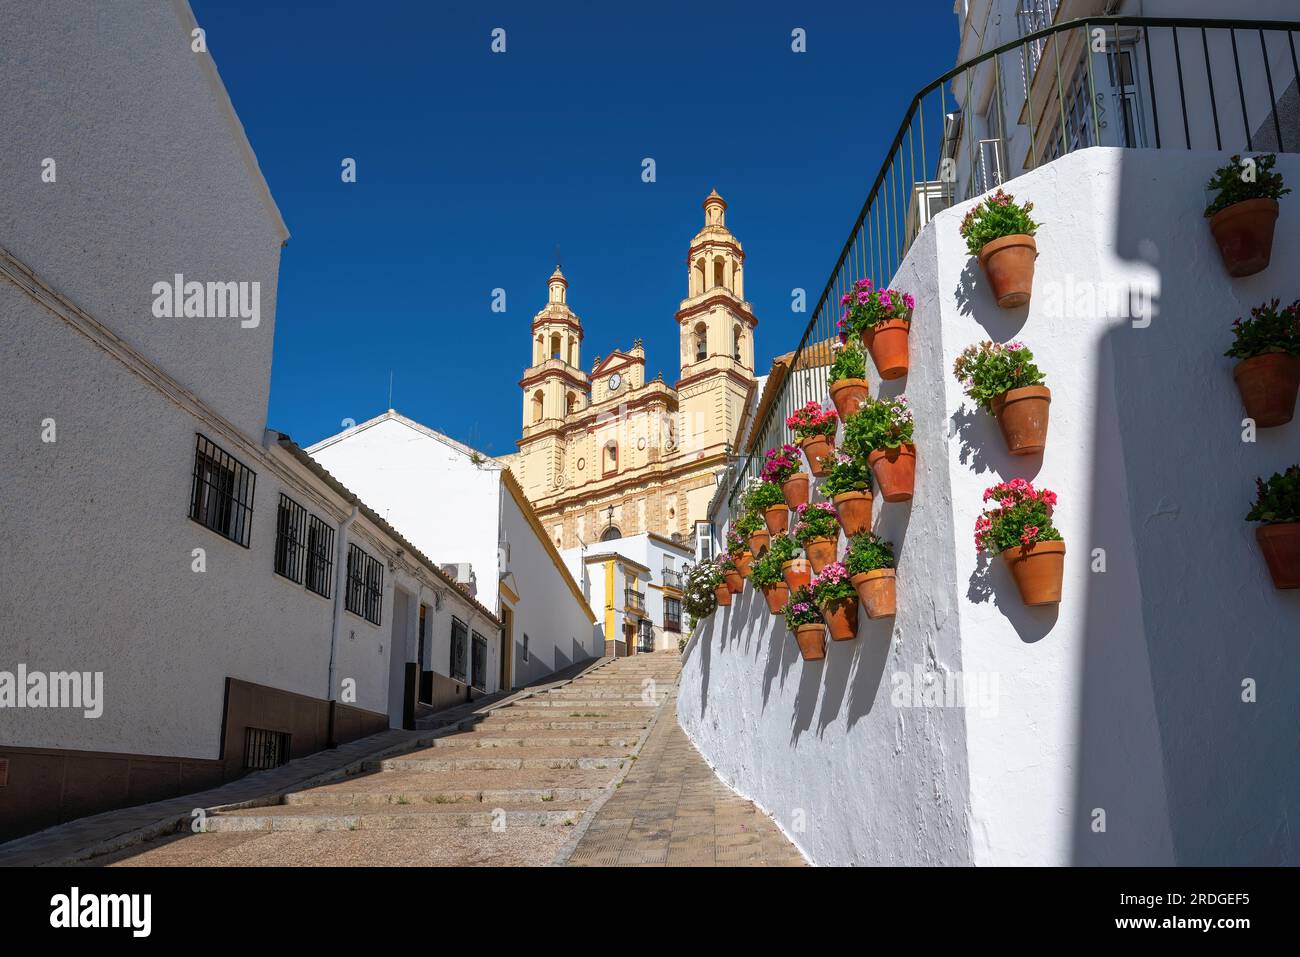 Chiesa di Nuestra Senora de la Encarnacion e scale con vasi di fiori - Olvera, Andalusia, Spagna Foto Stock